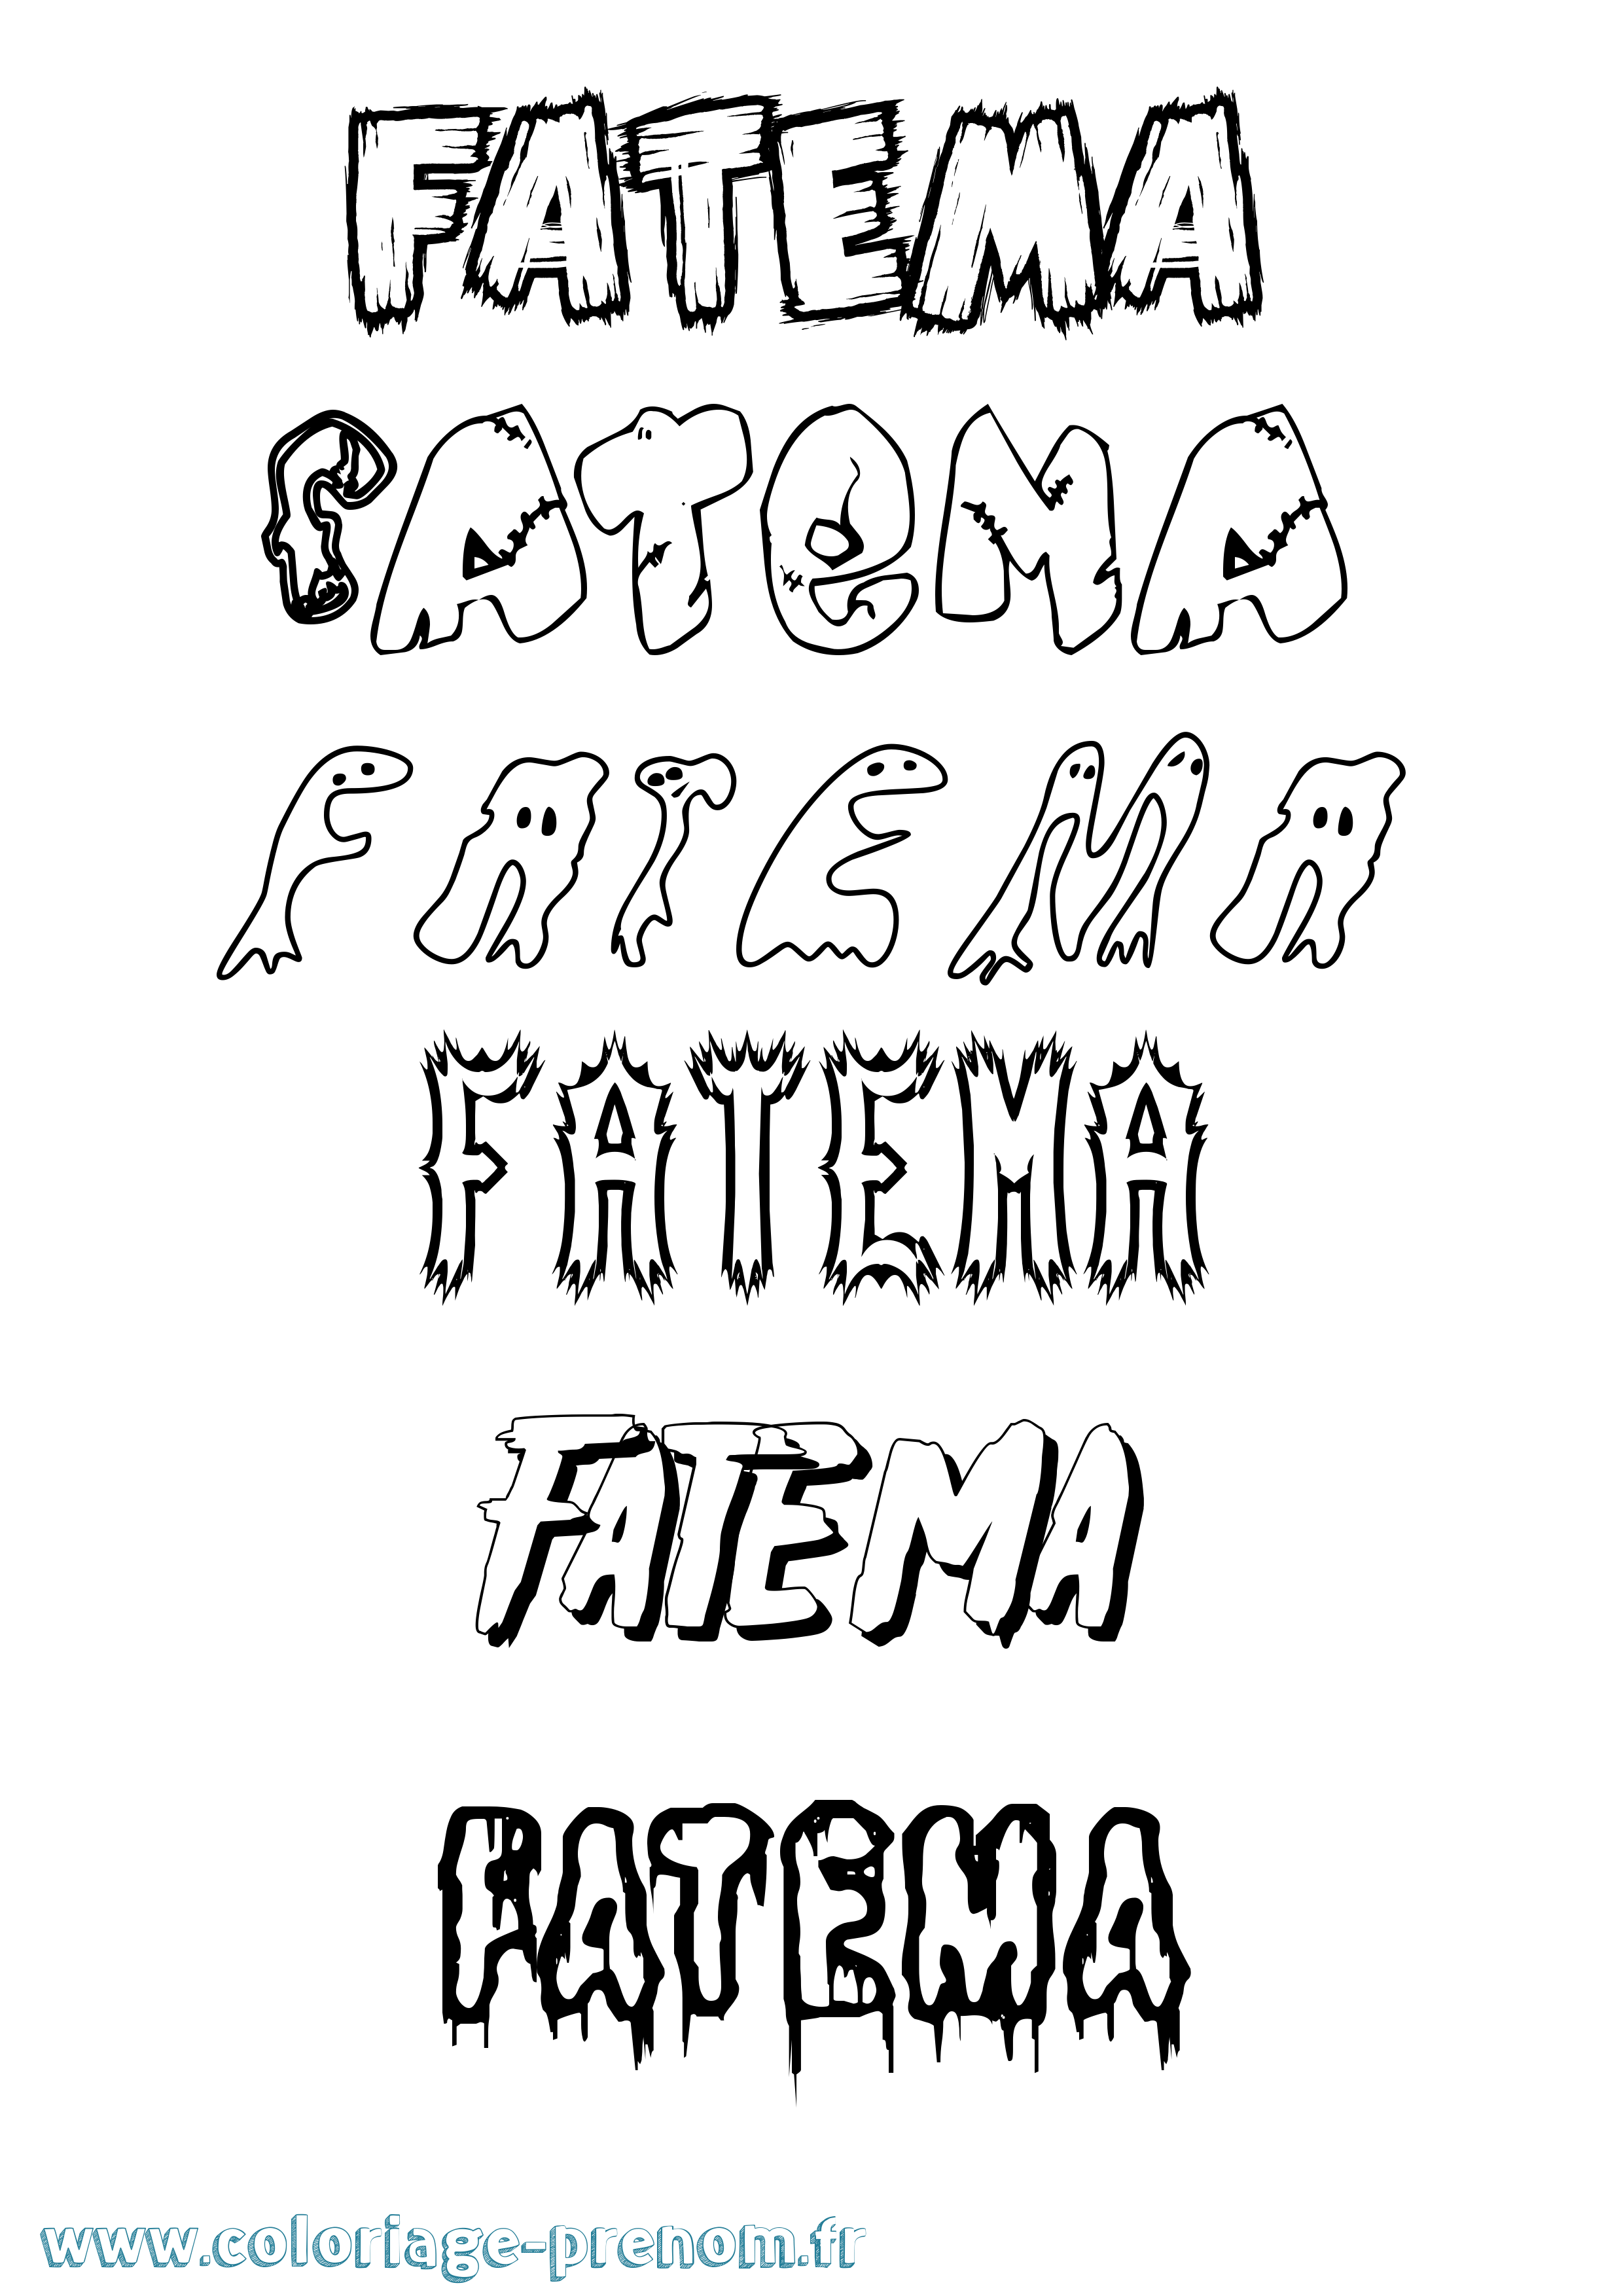 Coloriage prénom Fatema Frisson